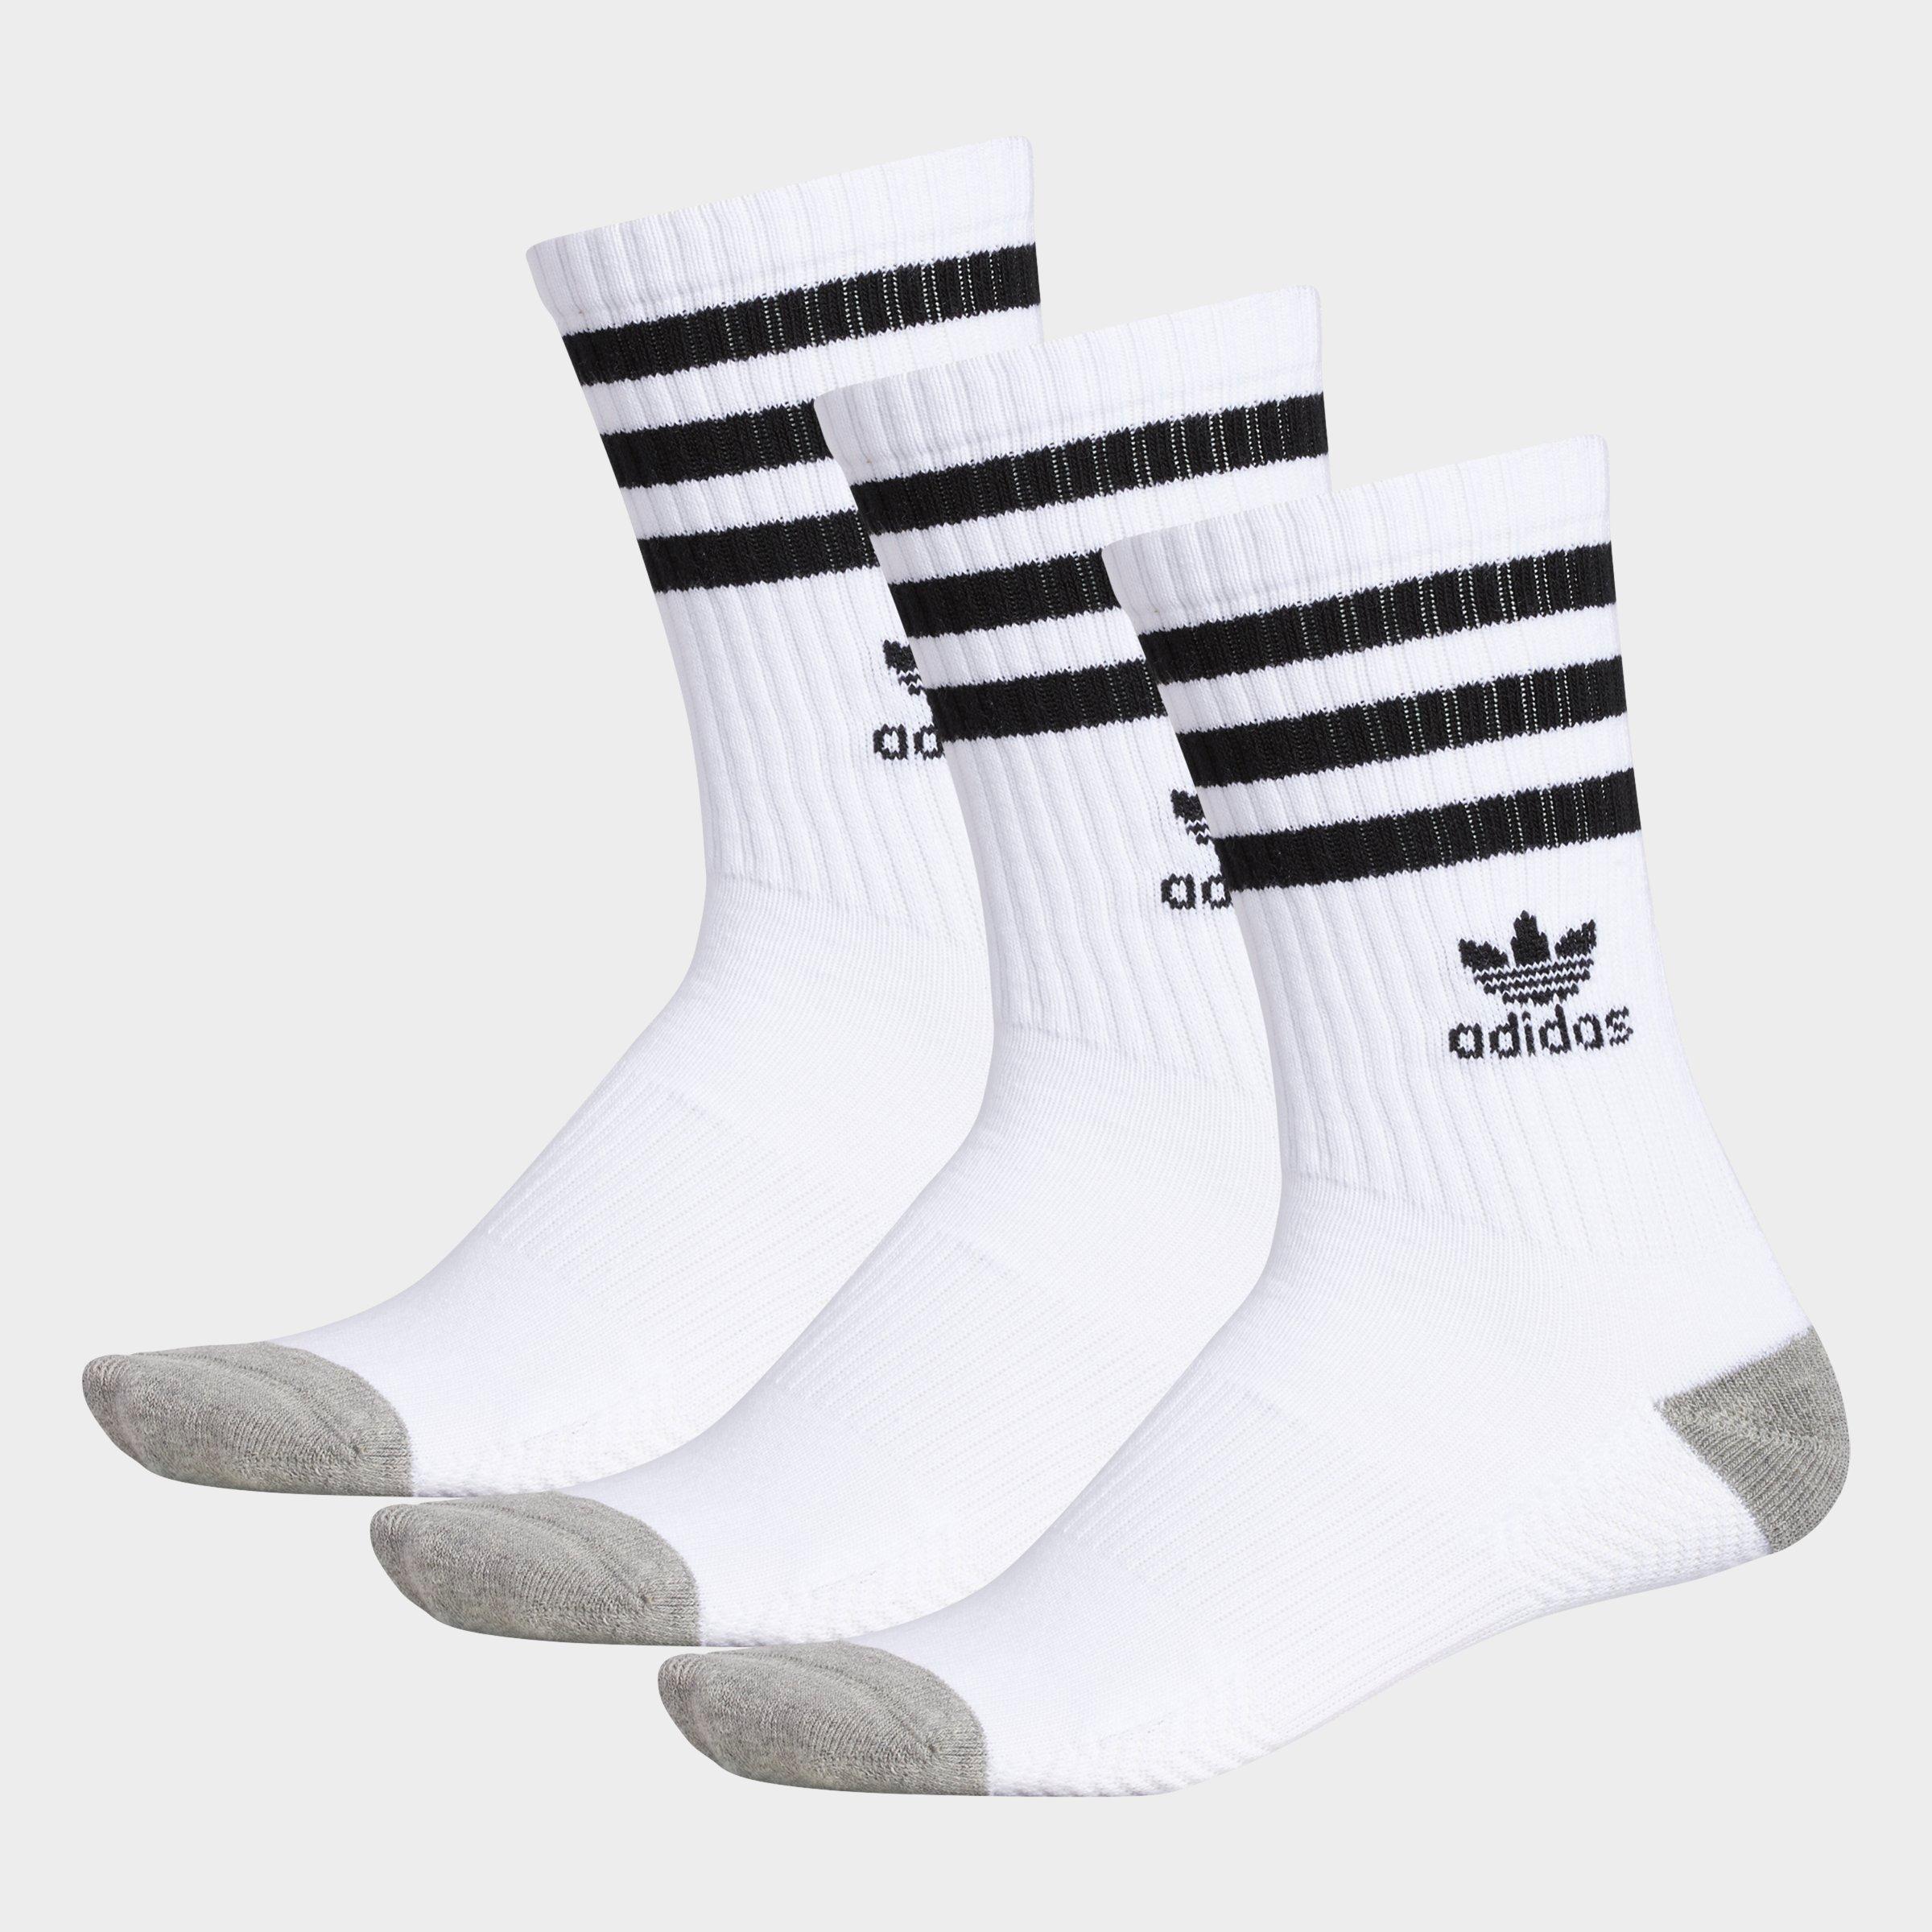 adidas roller quarter socks